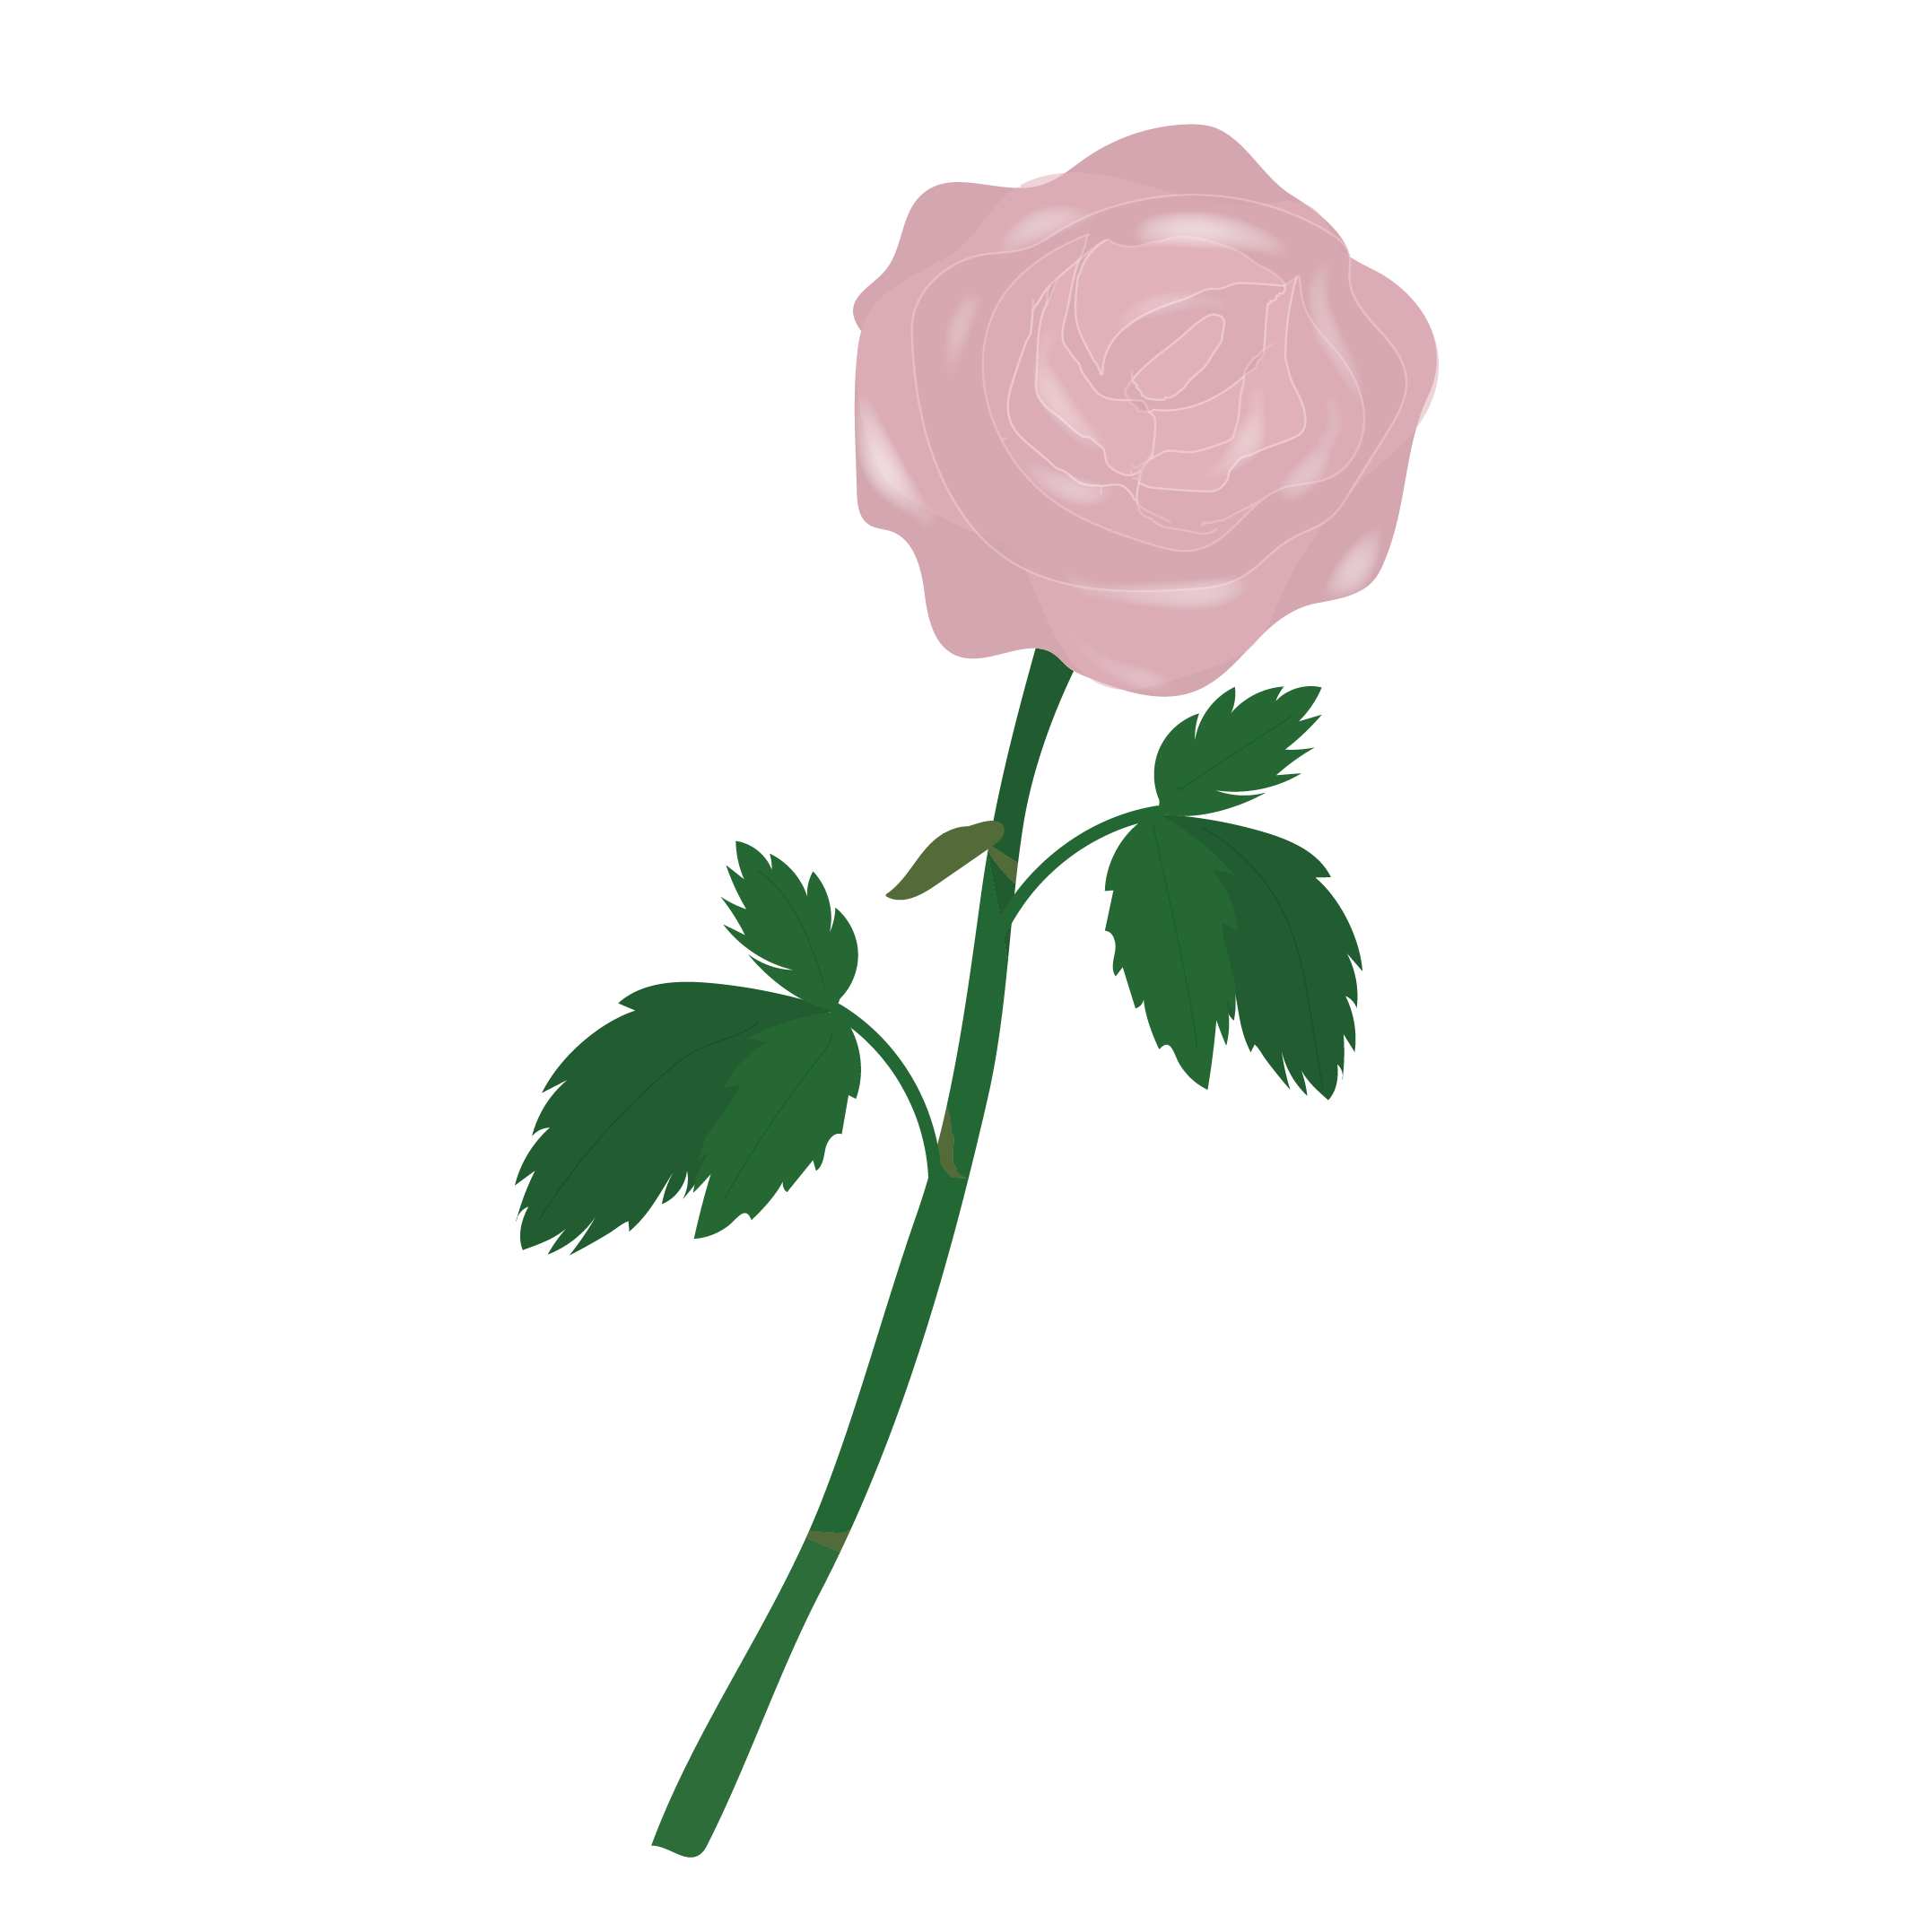 一輪のピンクの薔薇 バラ の フリー イラスト 商用フリー 無料 の